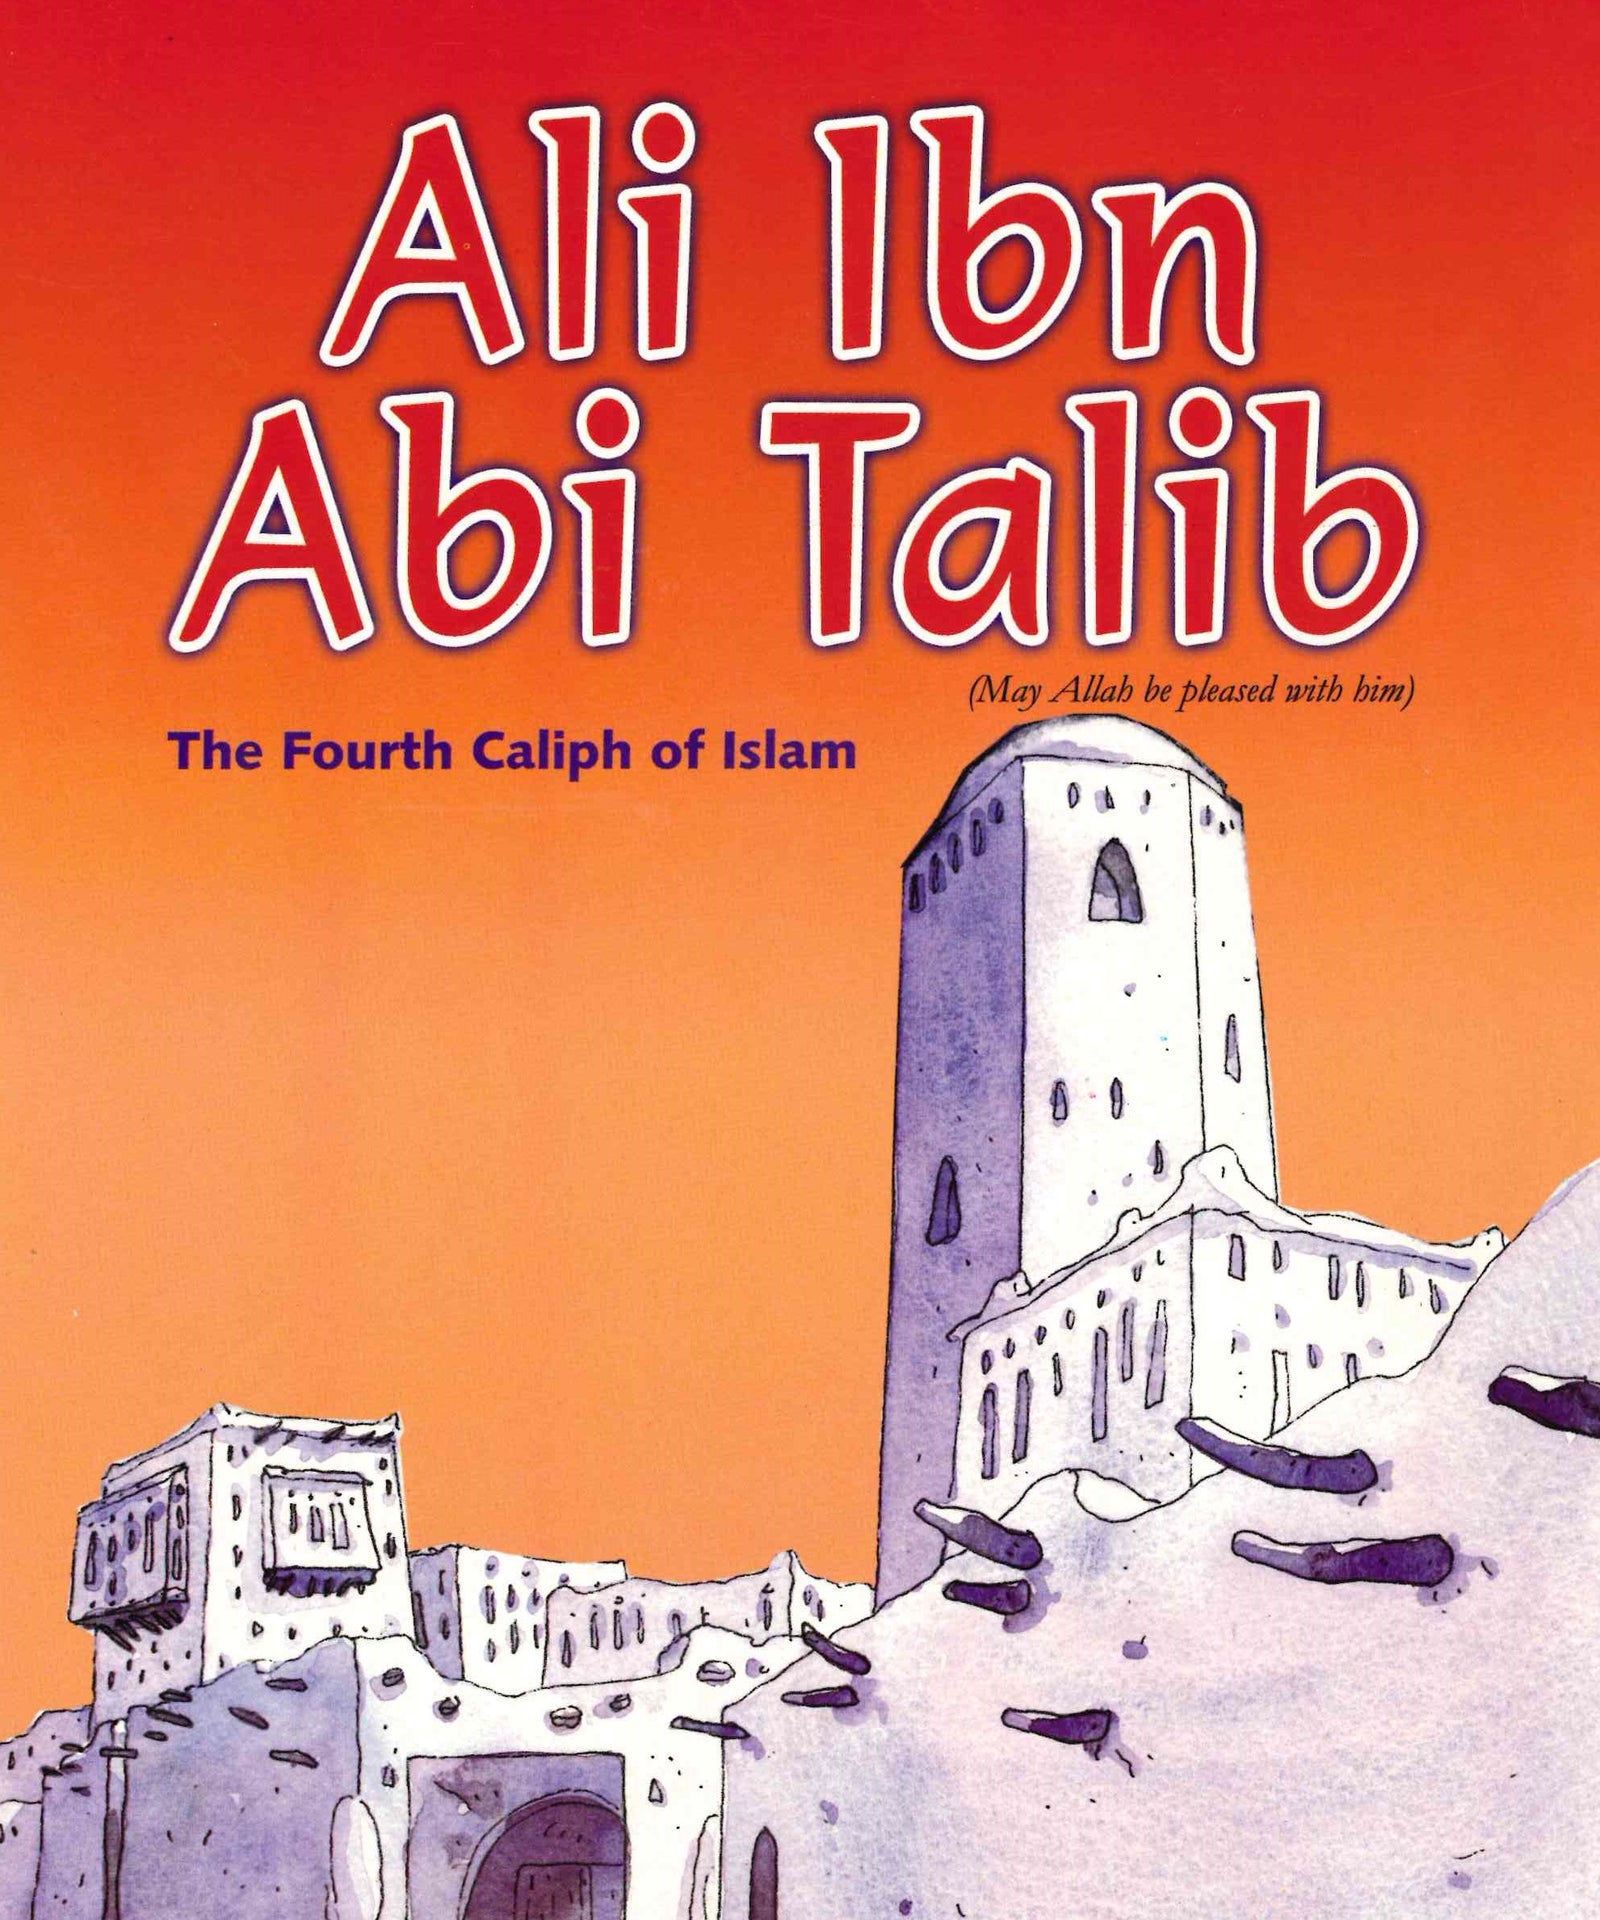 Ali Ibn Abi Talib The Fourth Caliph Of Islam Al Hidaayah Publishing